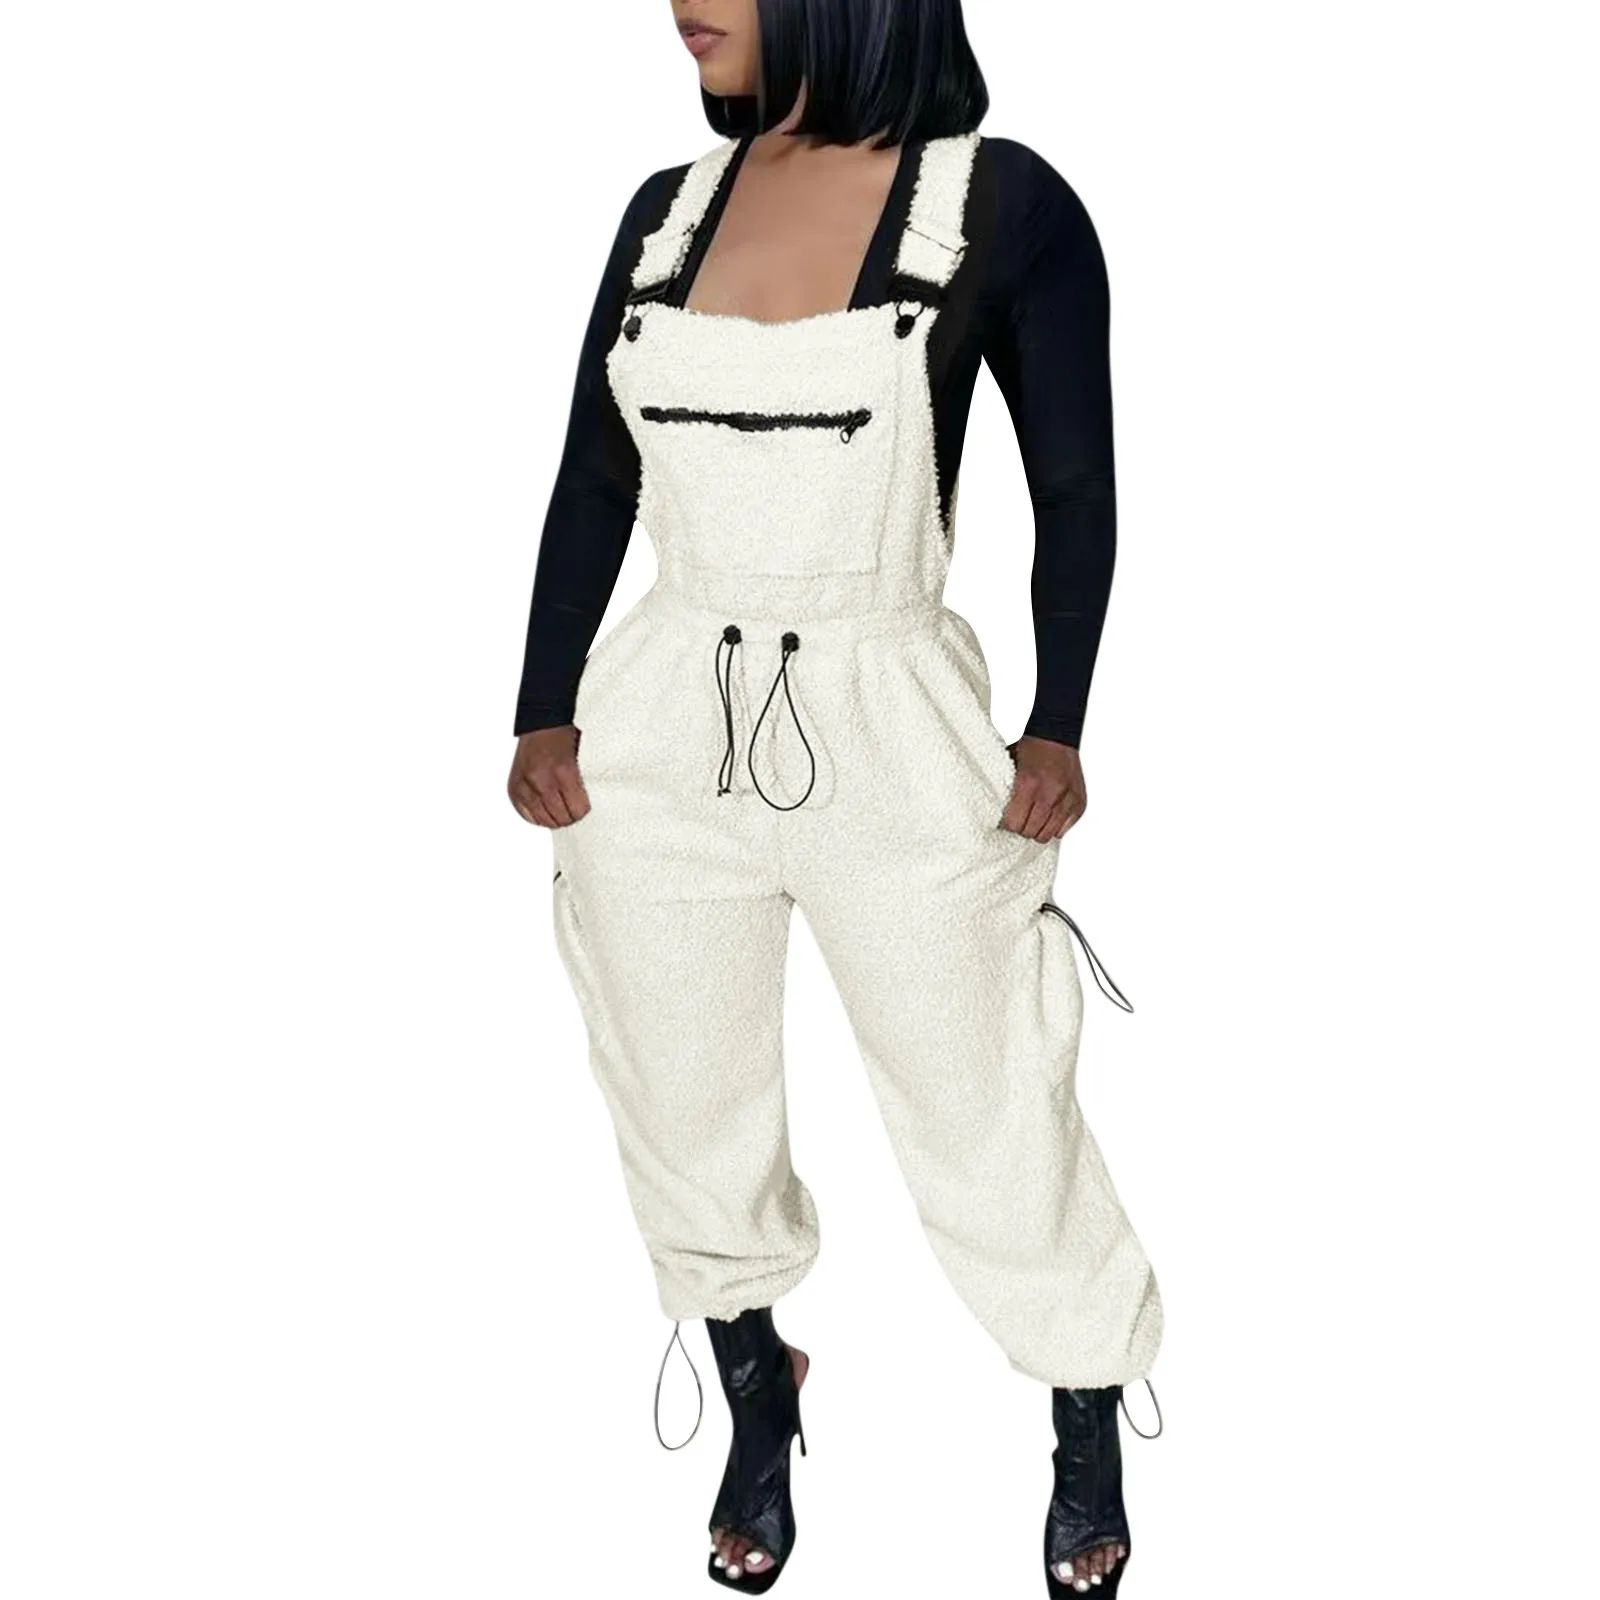 

Womens Fleece Overalls One-piece Bibs Jumpsuits Adjustable Suspender Straps Warm Winter Fuzzy Ski Pants ropa de mujer 점프슈트